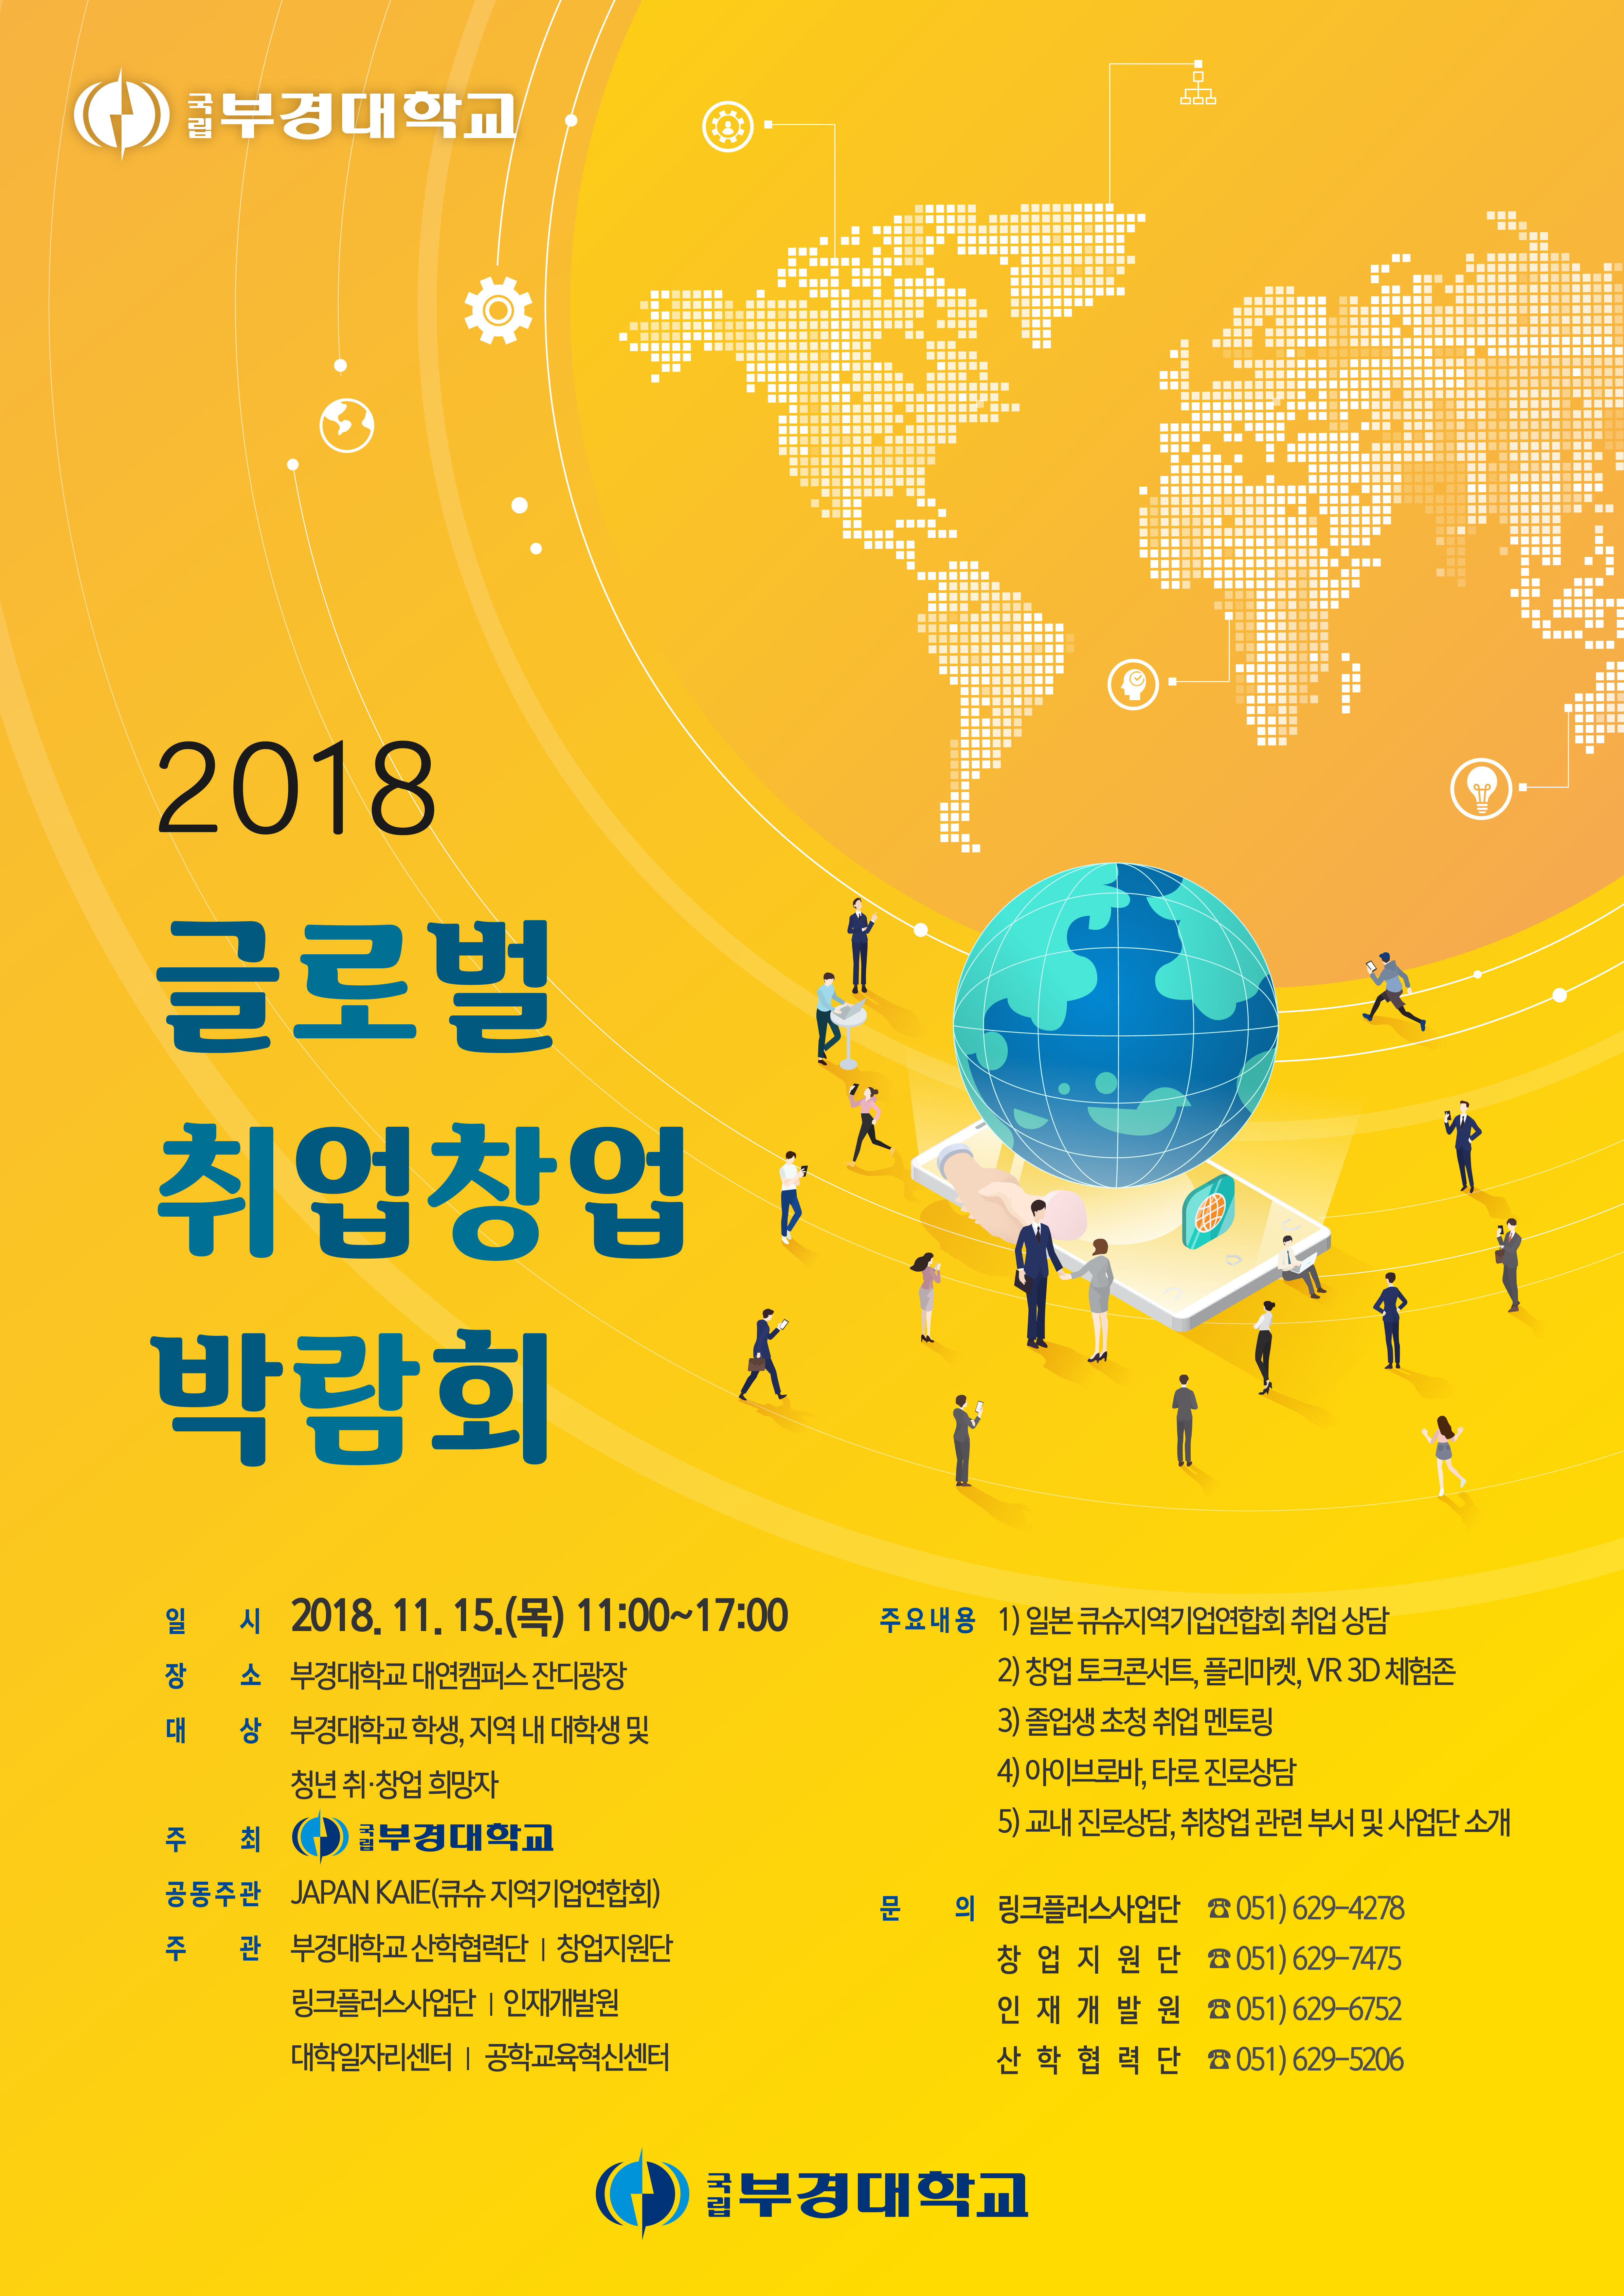 2018 글로벌 취업박람회 개최 알림